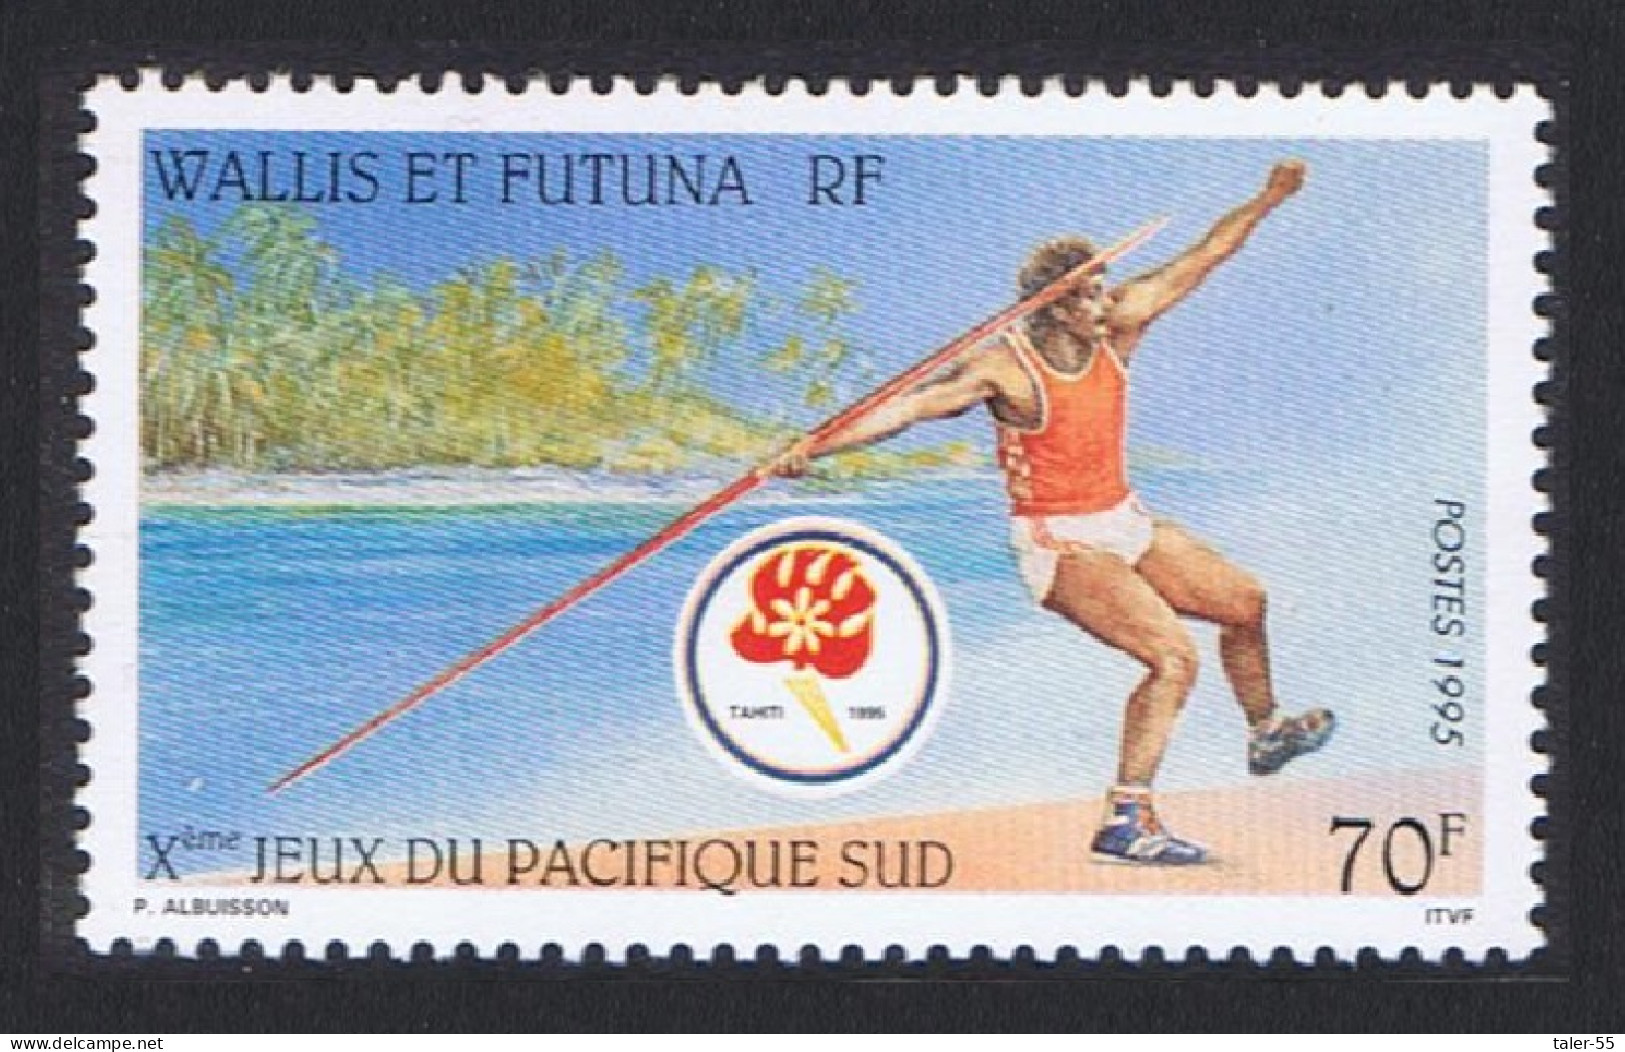 Wallis And Futuna 10th South Pacific Games 1995 MNH SG#664 Sc#470 - Neufs